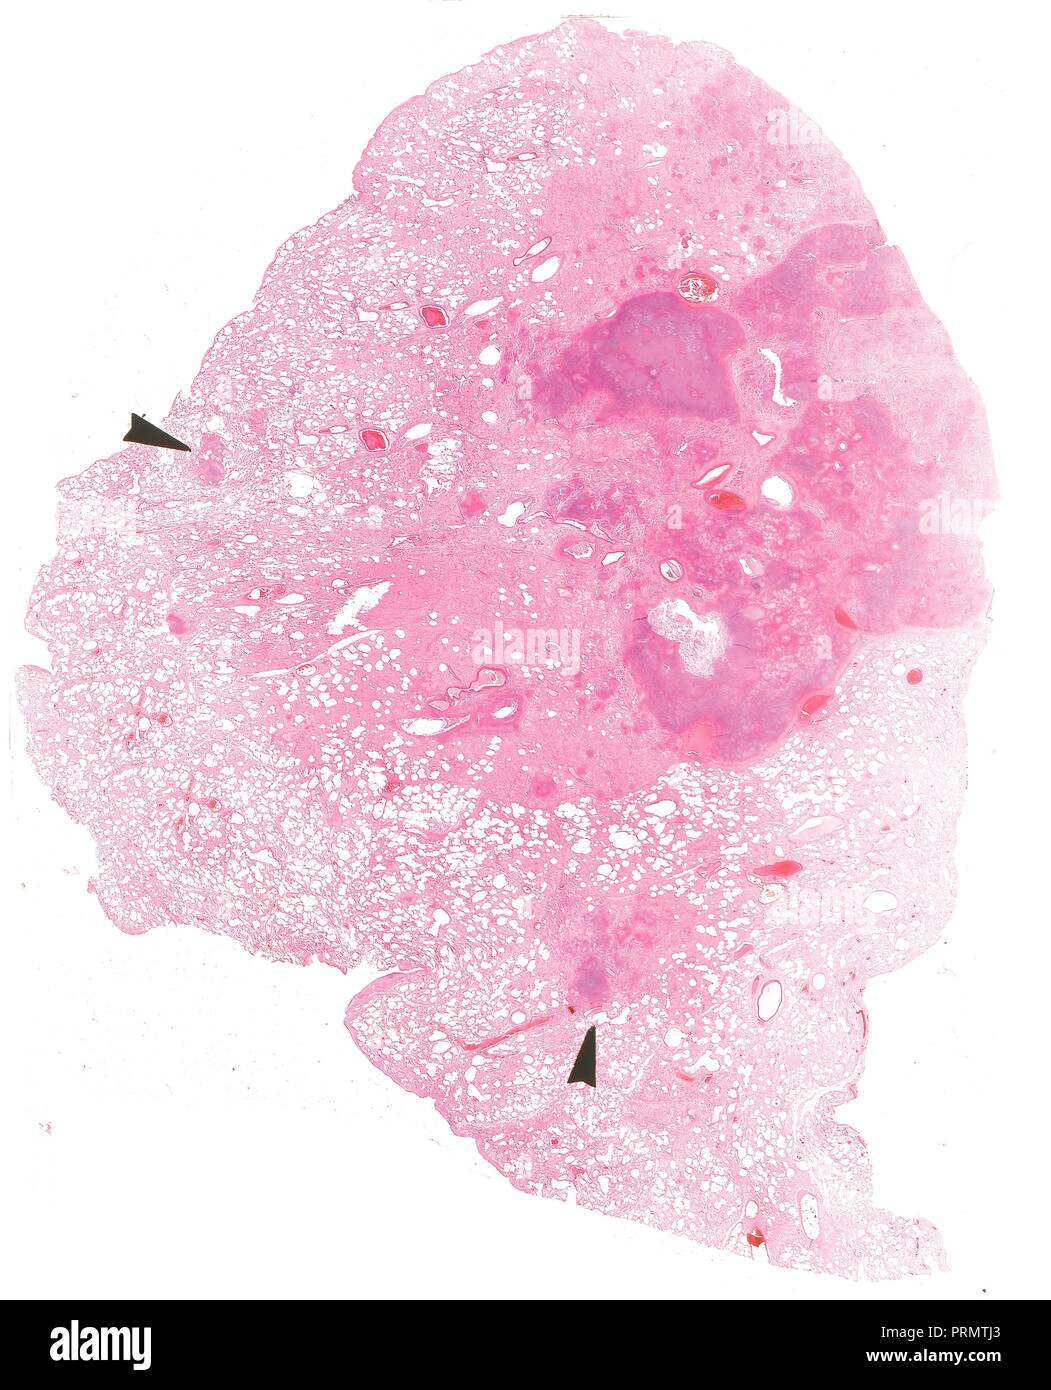 Des tranches de tissu humain, close-up des organes intérieurs. Banque D'Images